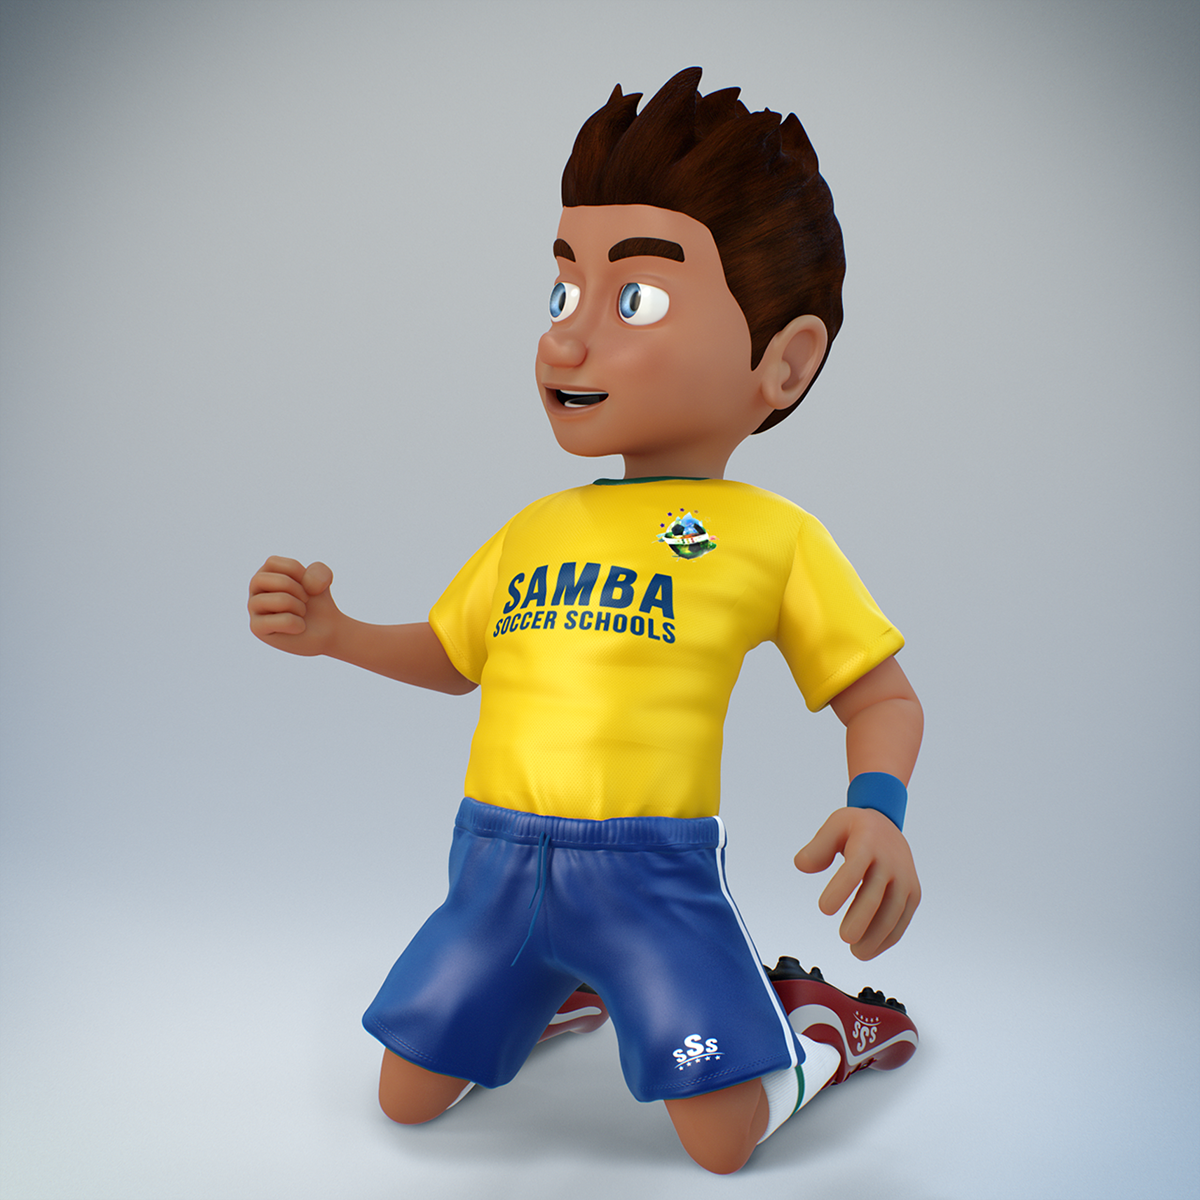 3D Character  cg character  3D Modeling 3d artist soccer player 3D Soccer 3d sports 3d football 3D cartoon cartoony character 3D cartoon character samba soccer schools enzo